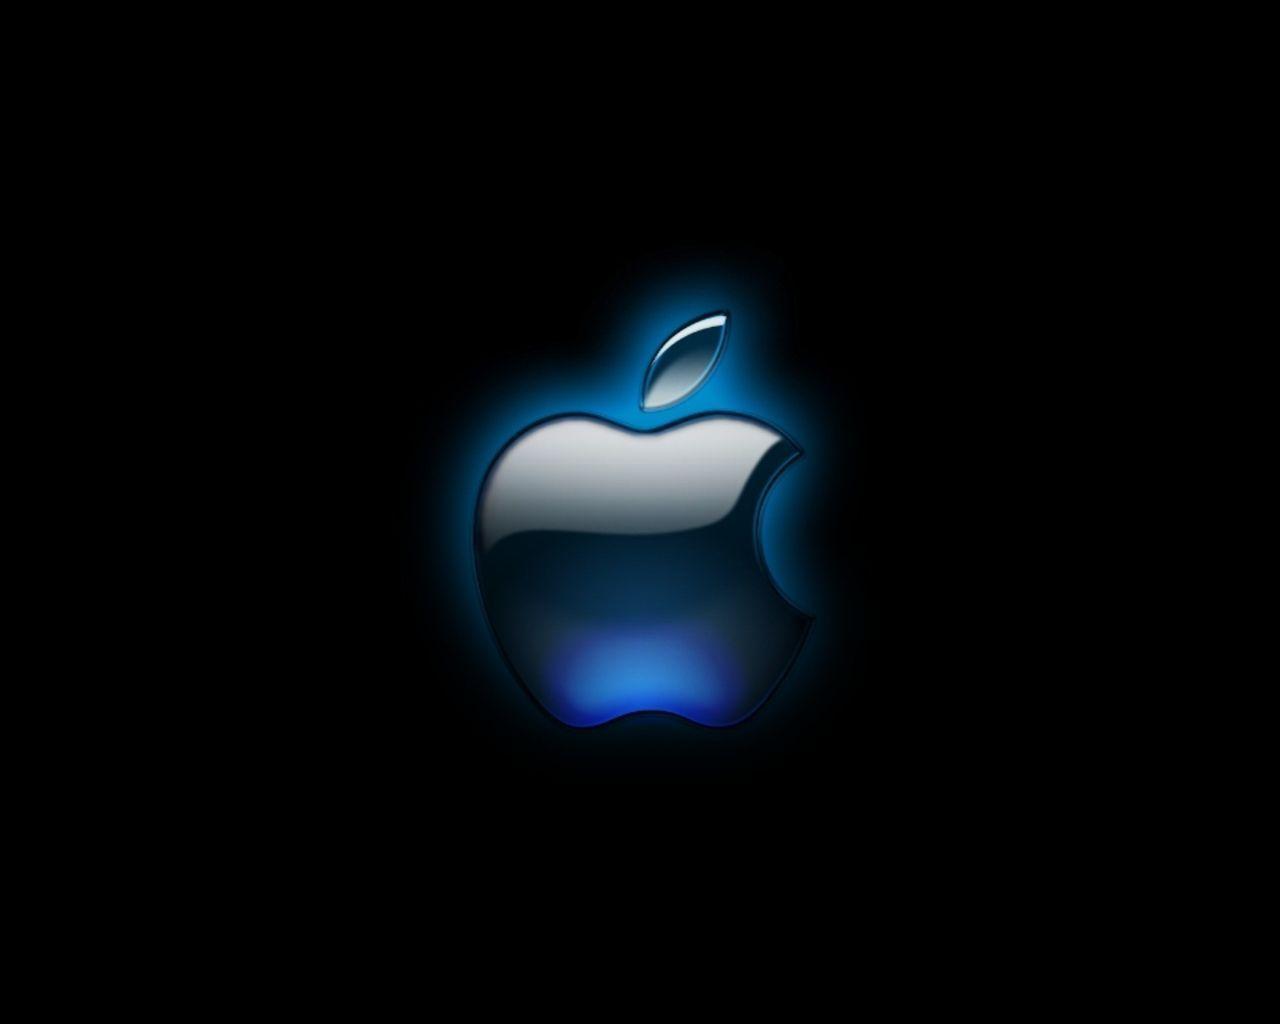 Wallpaper For > Apple Logo Wallpaper For Desktop